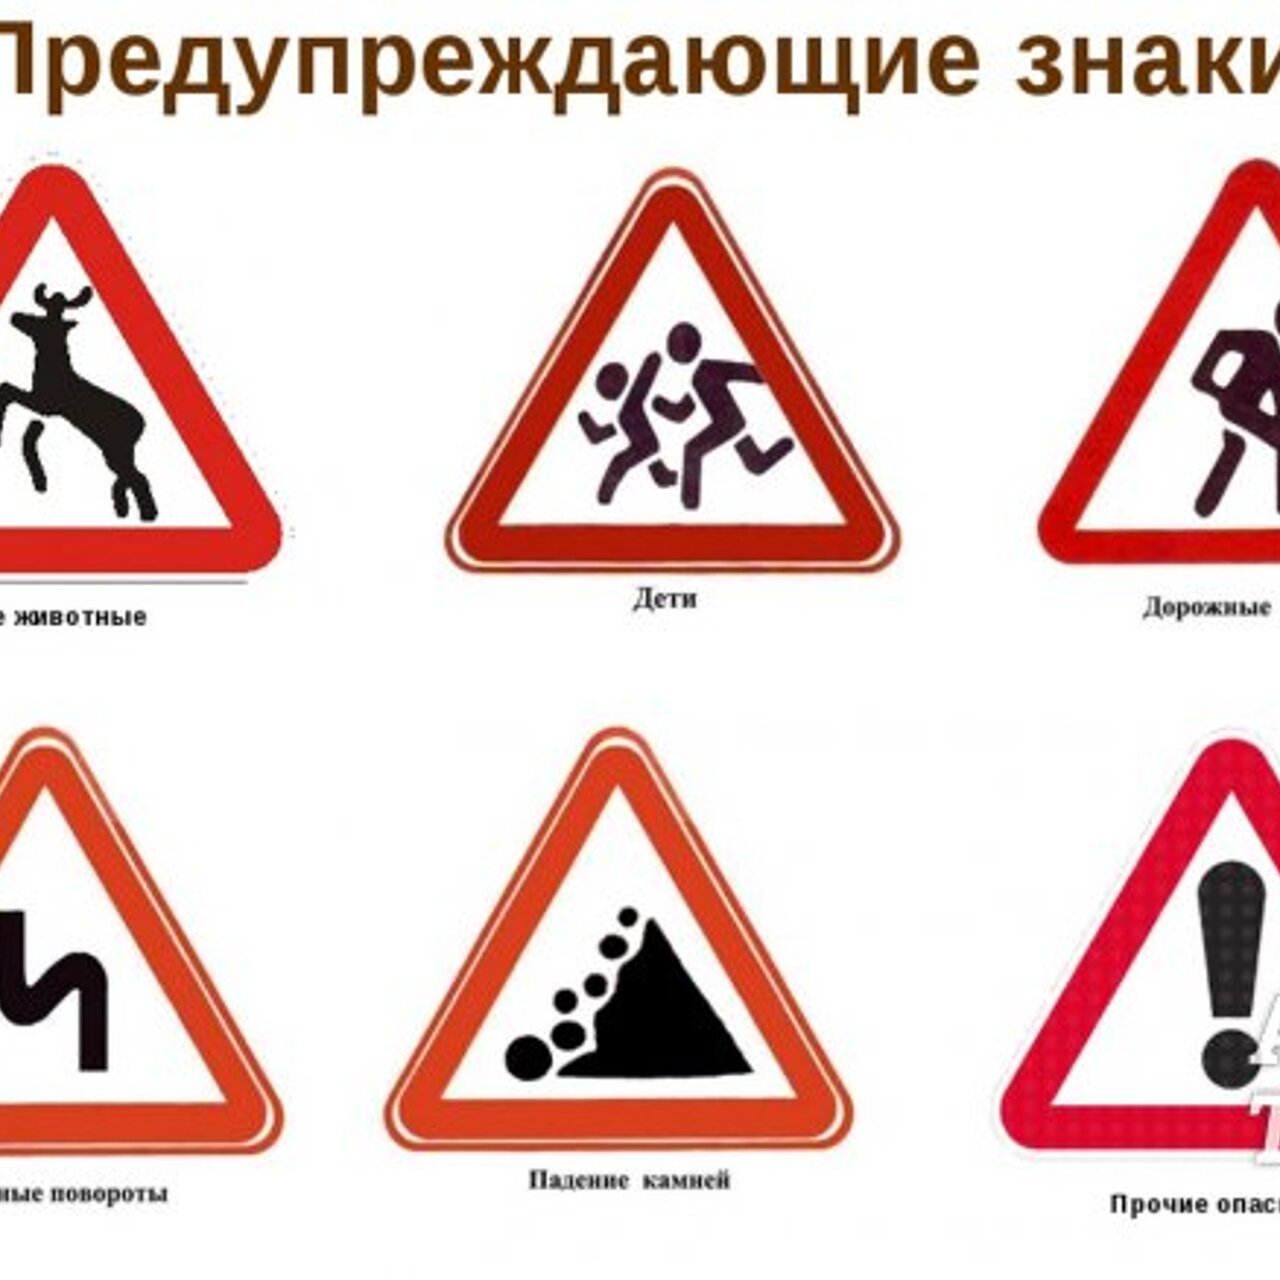 Дорожные знаки статья. Дорожники знаки. Предупреждающие знаки. Предупреждающие знаки дорожного движения. Предупреждающие дорожные знаки для детей.